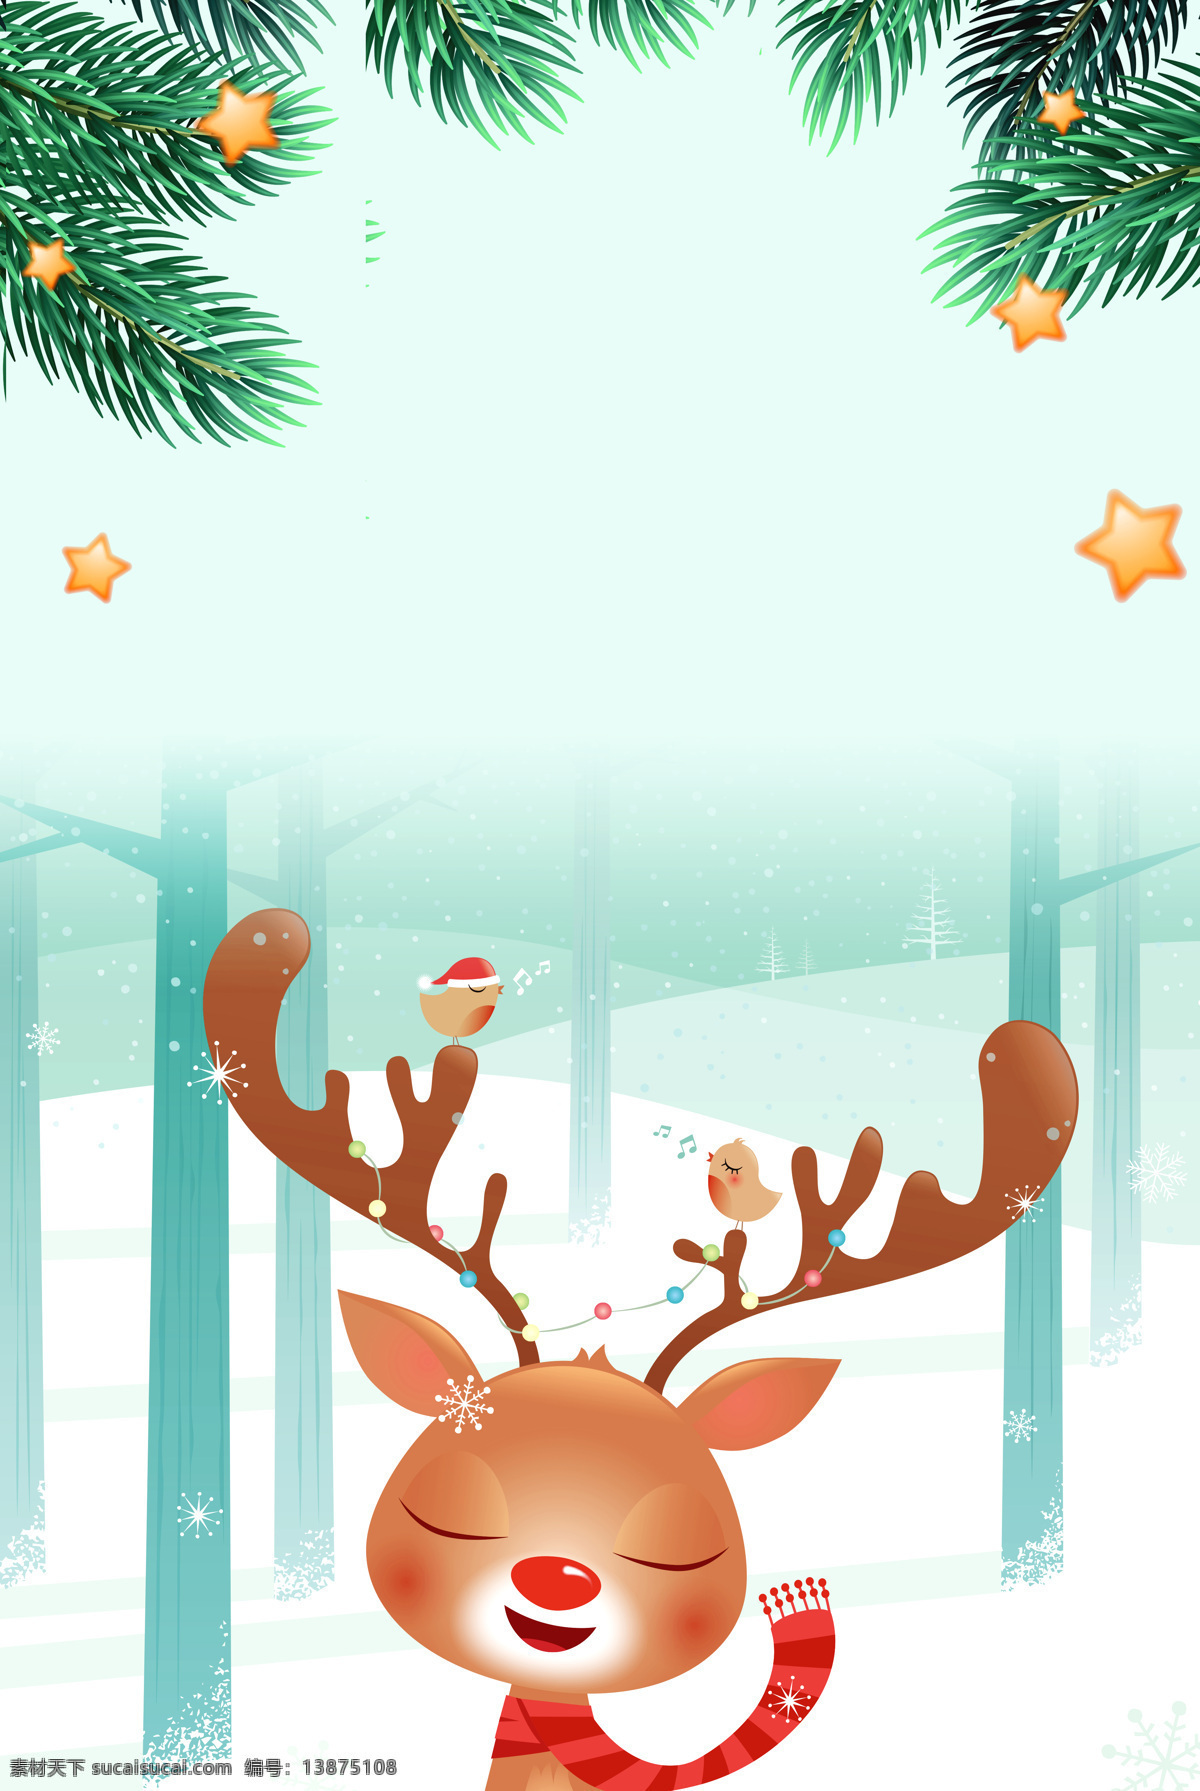 可爱 卡通 麋鹿 圣诞 清爽 背景 圣诞节 树叶 星星 大气 手绘 扁平